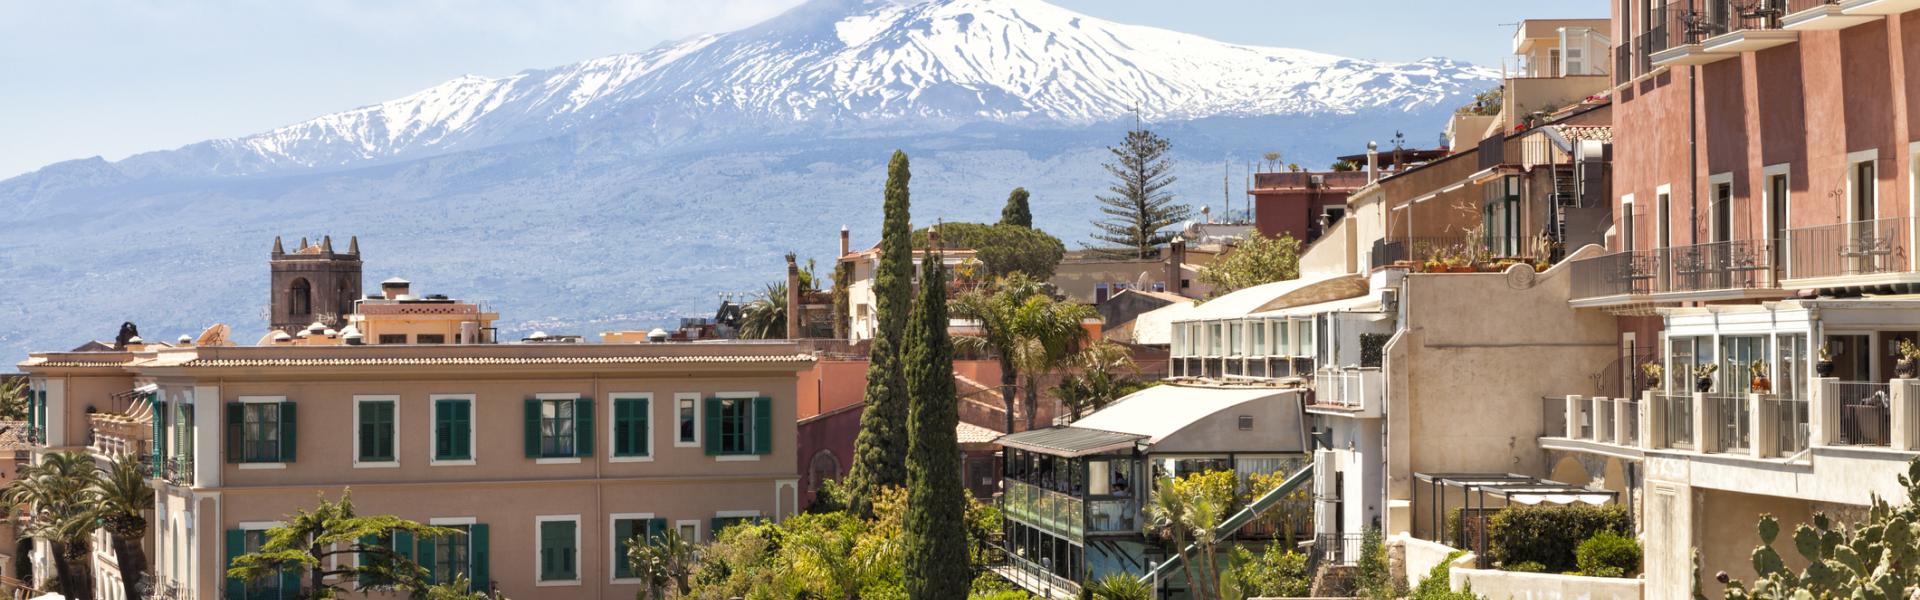 Case vacanze e appartamenti a Taormina in affitto - CaseVacanza.it